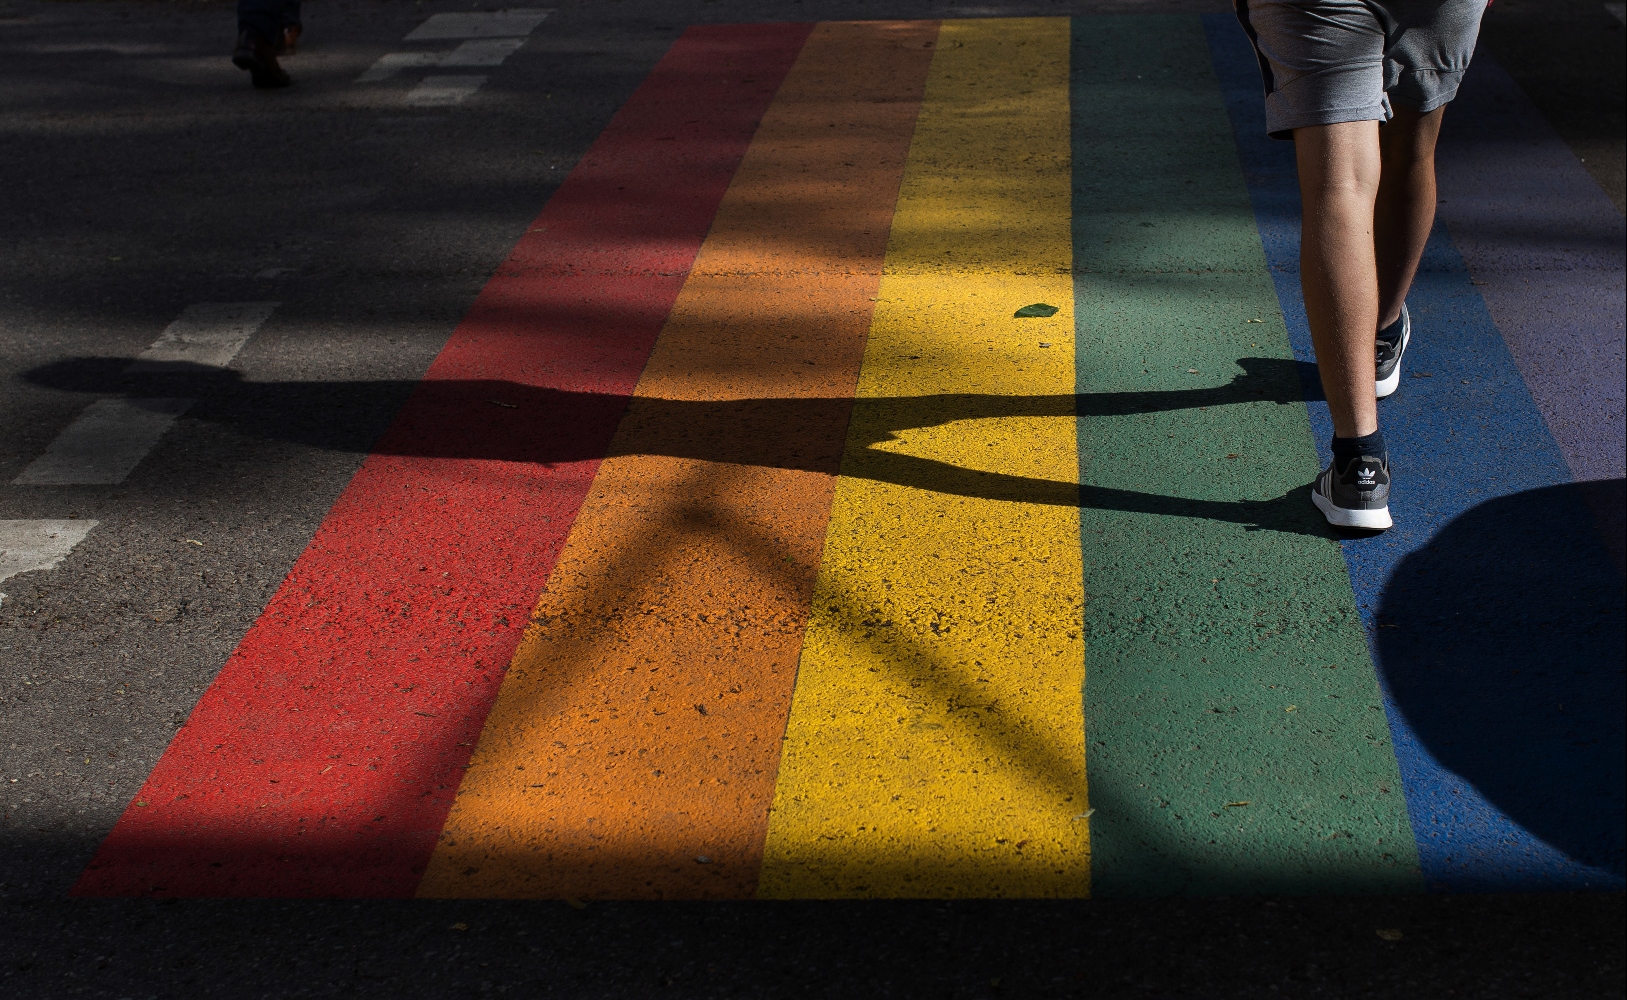 Ιορδανία: Στοχοποίηση της ΛΟΑΤΚΙ+ κοινότητας -Απαγωγές, παρενοχλήσεις και απειλές